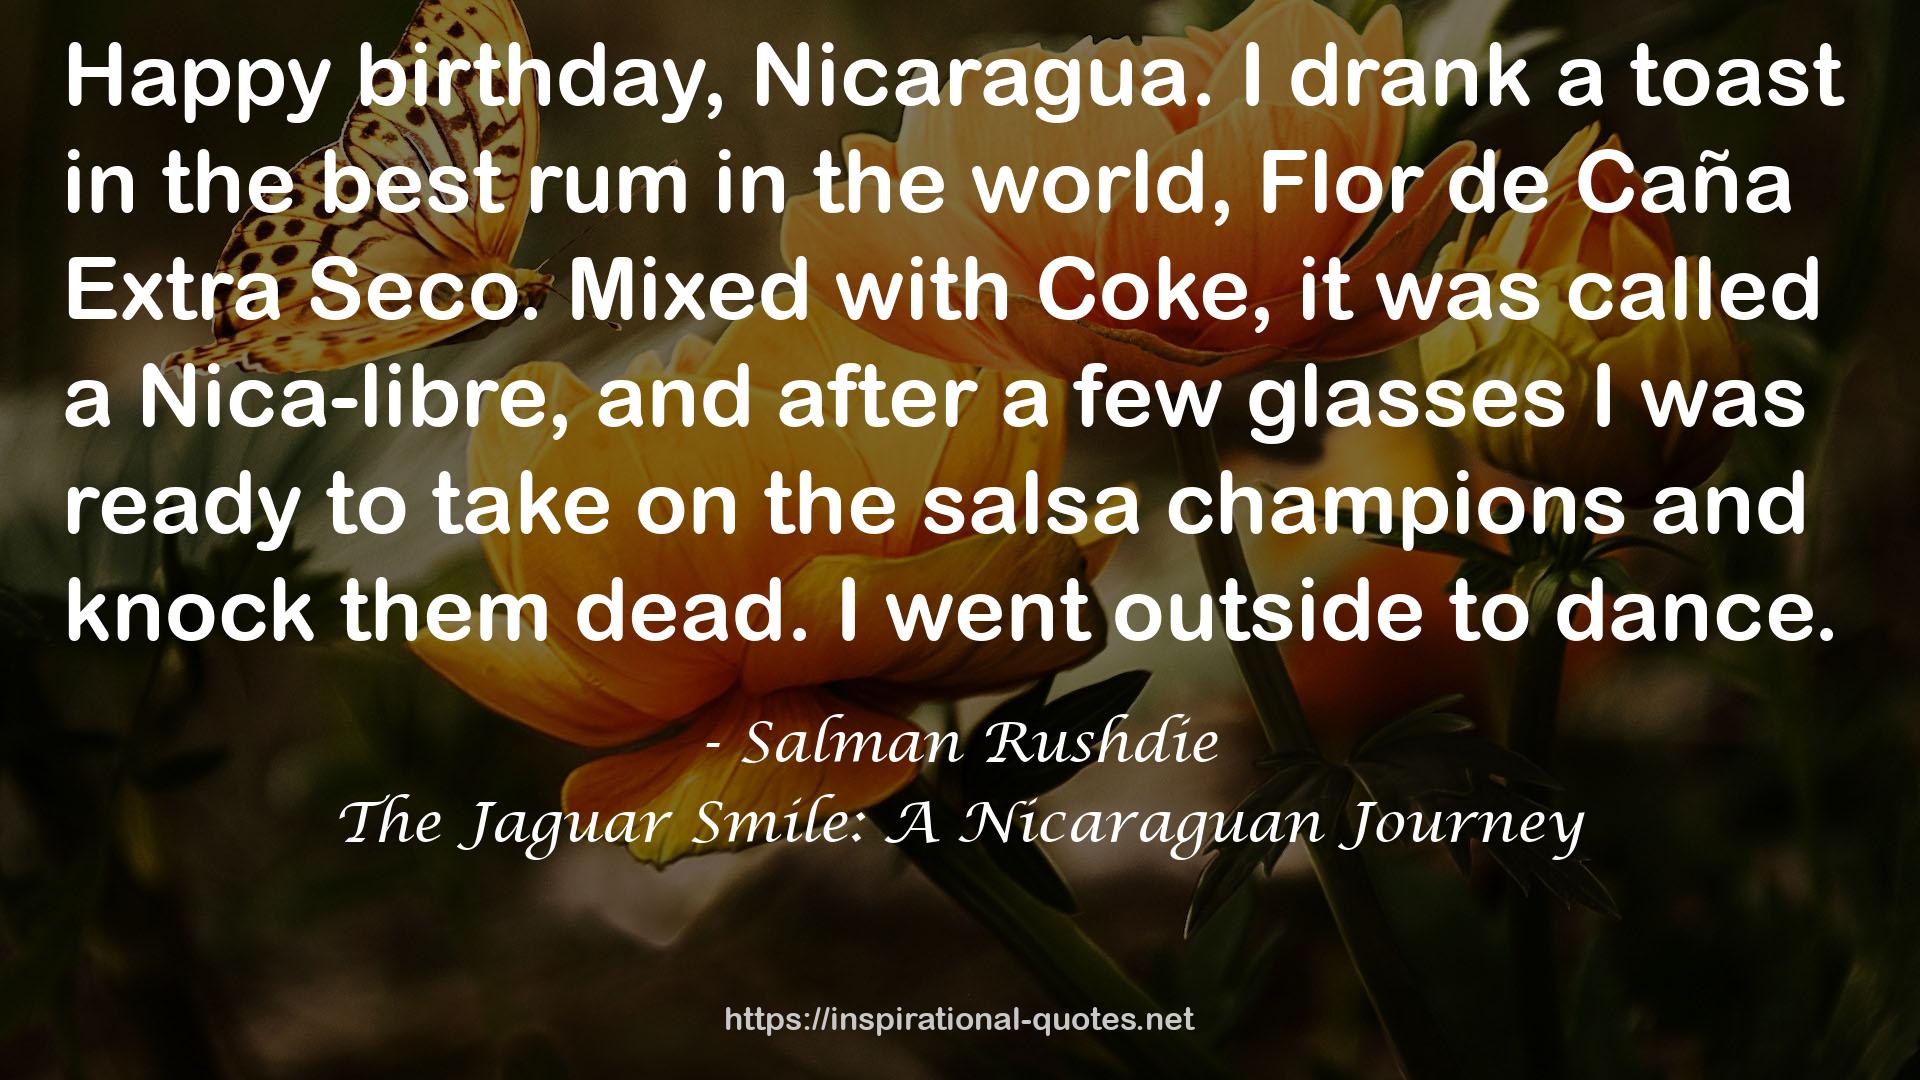 The Jaguar Smile: A Nicaraguan Journey QUOTES